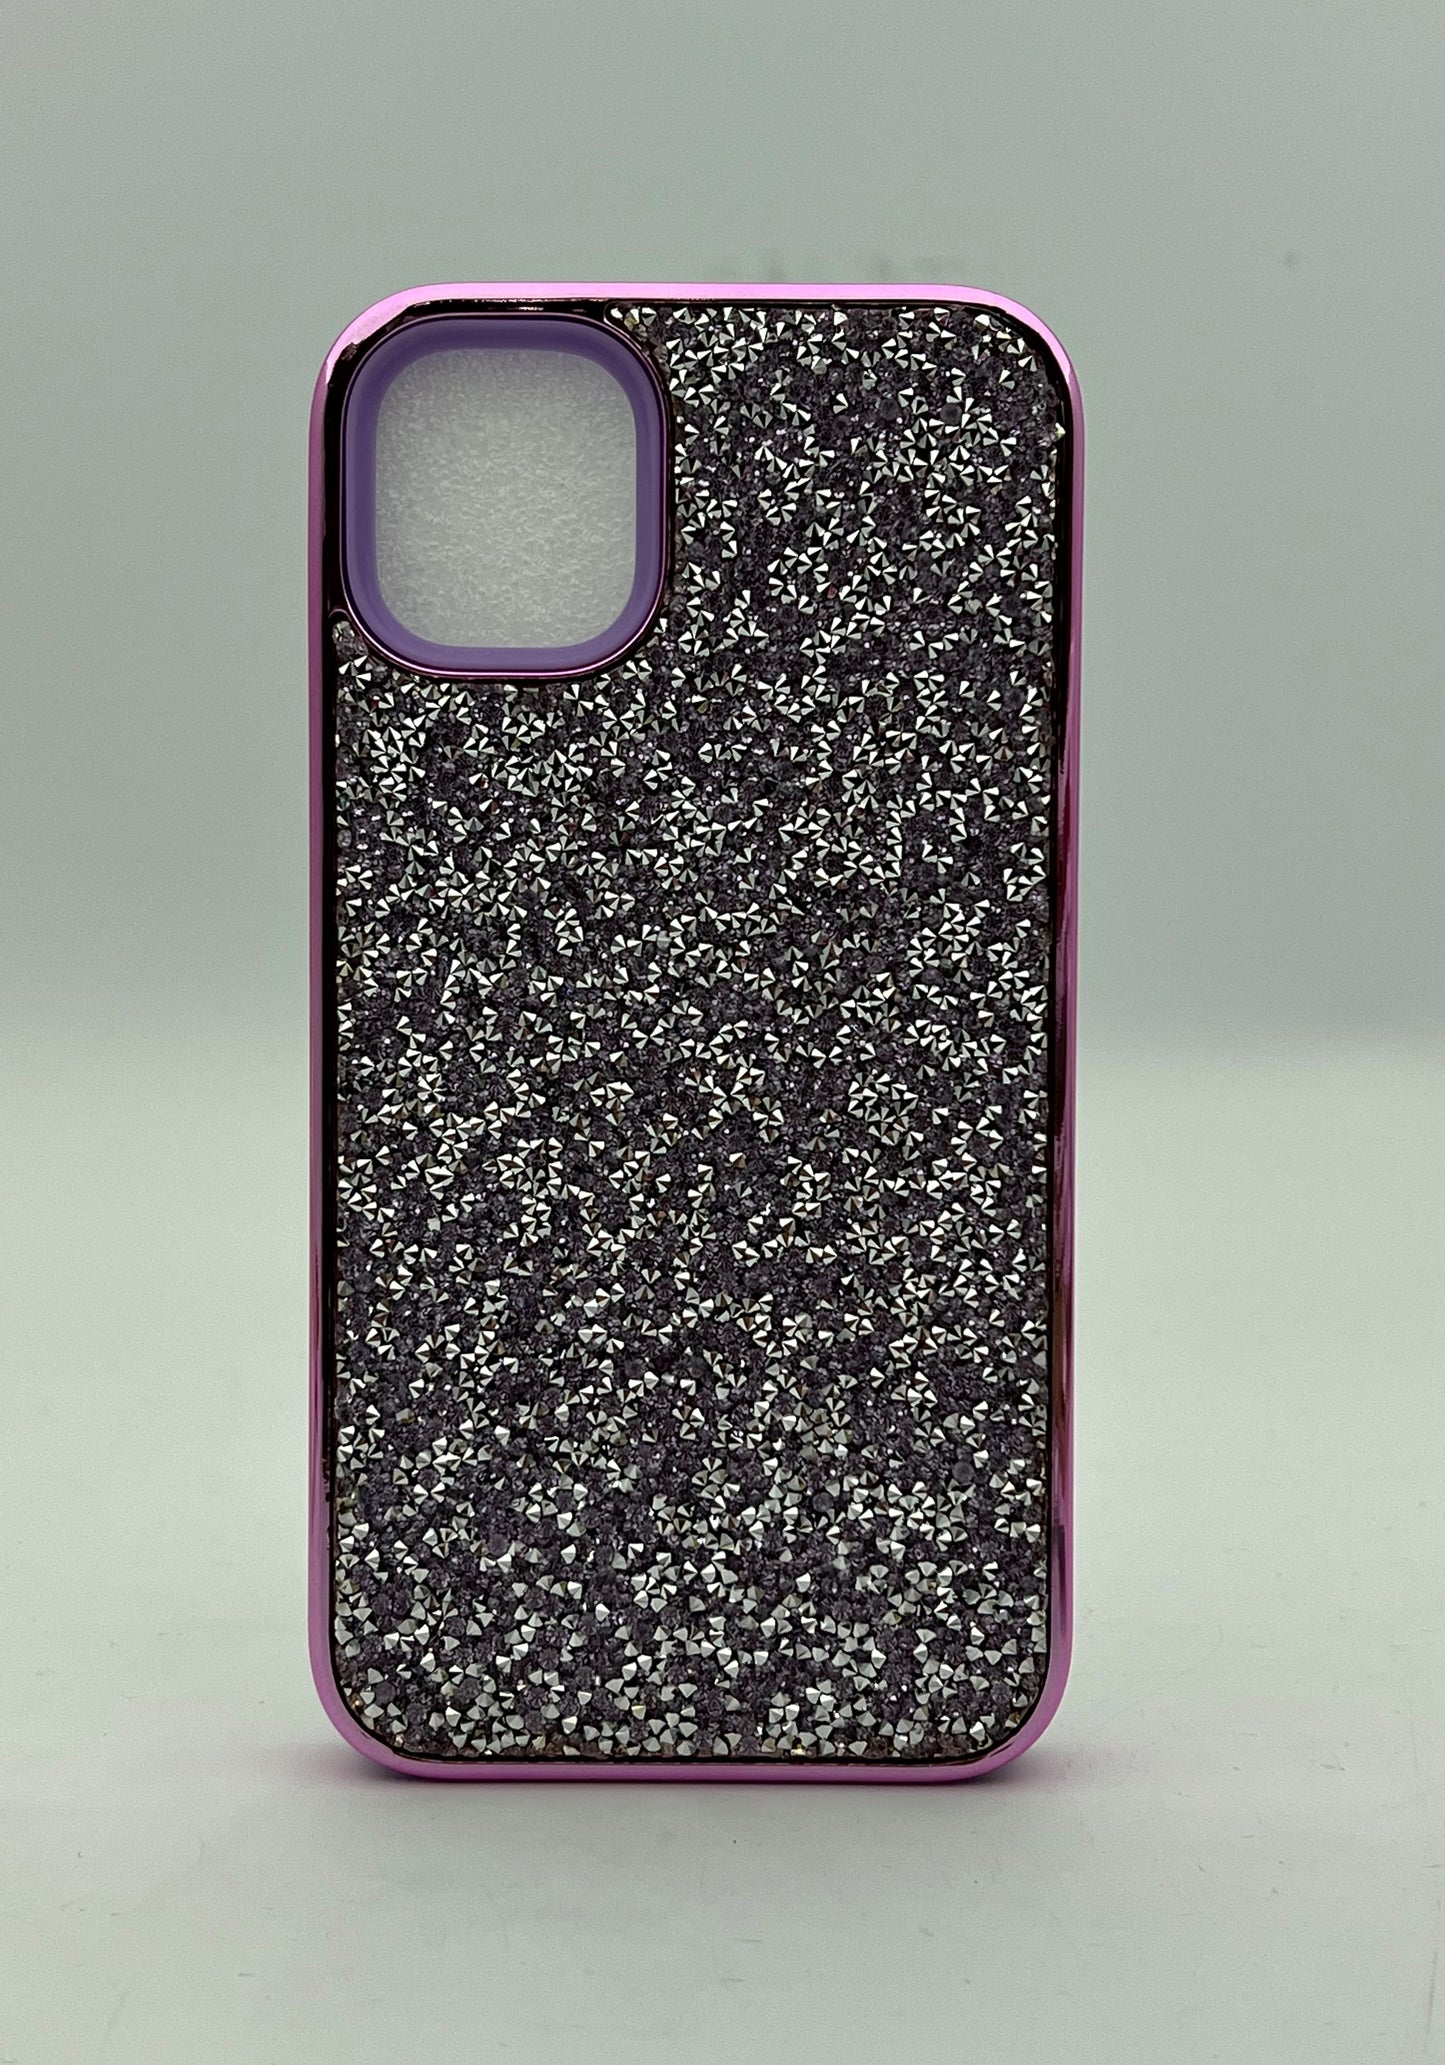 iPhone 11 glitter dual layer case